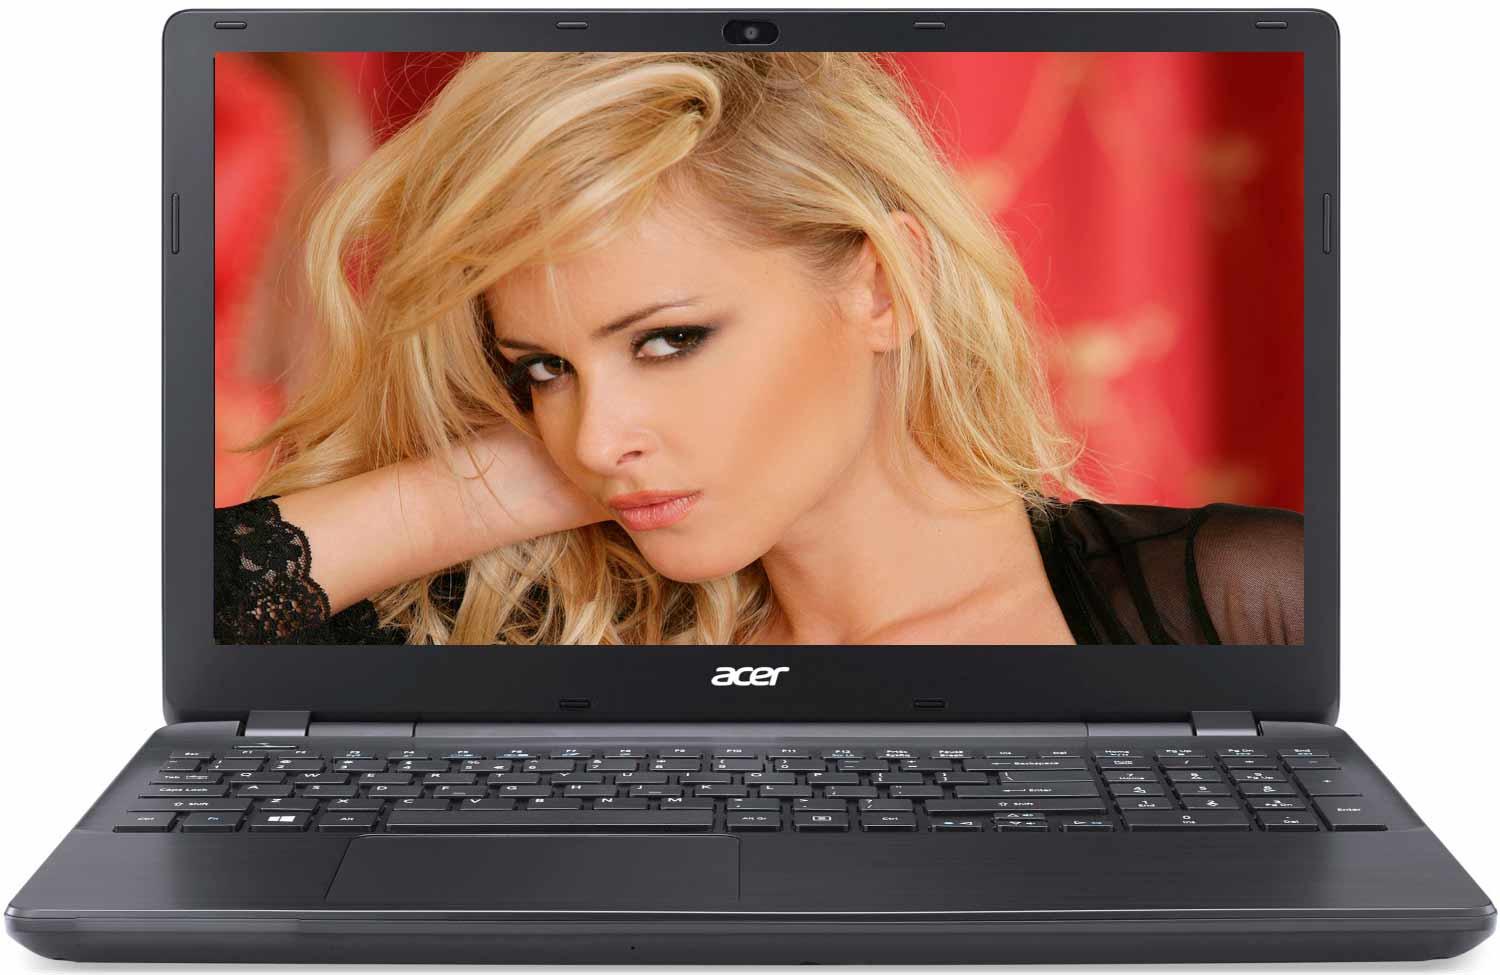   Acer Extensa EX2519-C2T9 (NX.EFAER.076)  1